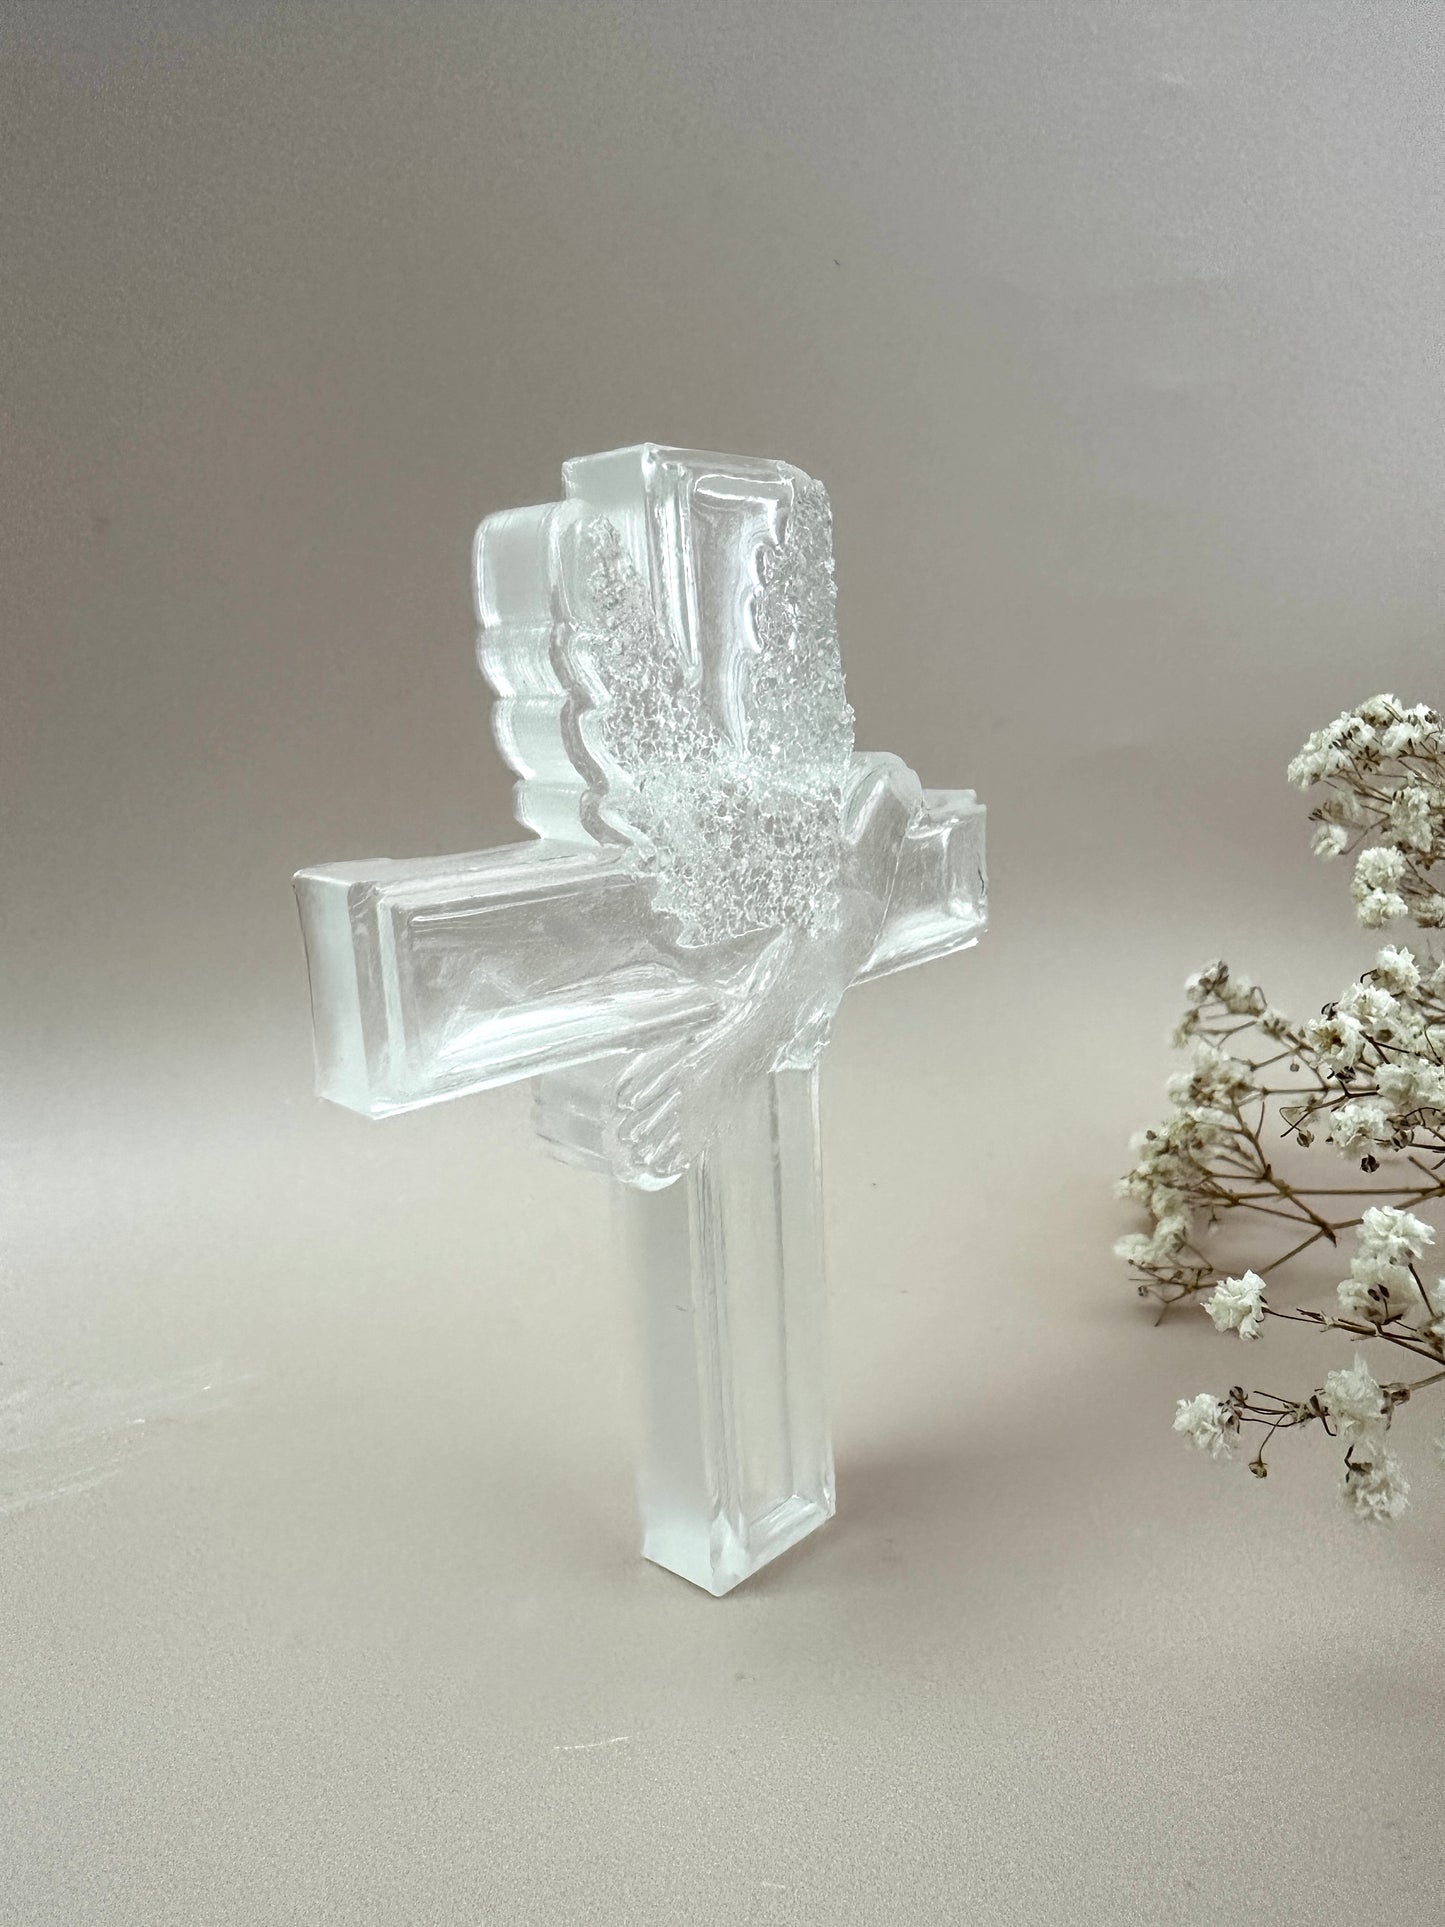 Silikonform mit Kreuzfigur und Taubenkristallen – einzigartiges religiöses Bastelwerkzeug – perfekt für DIY-Projekte – ideales christliches Geschenk